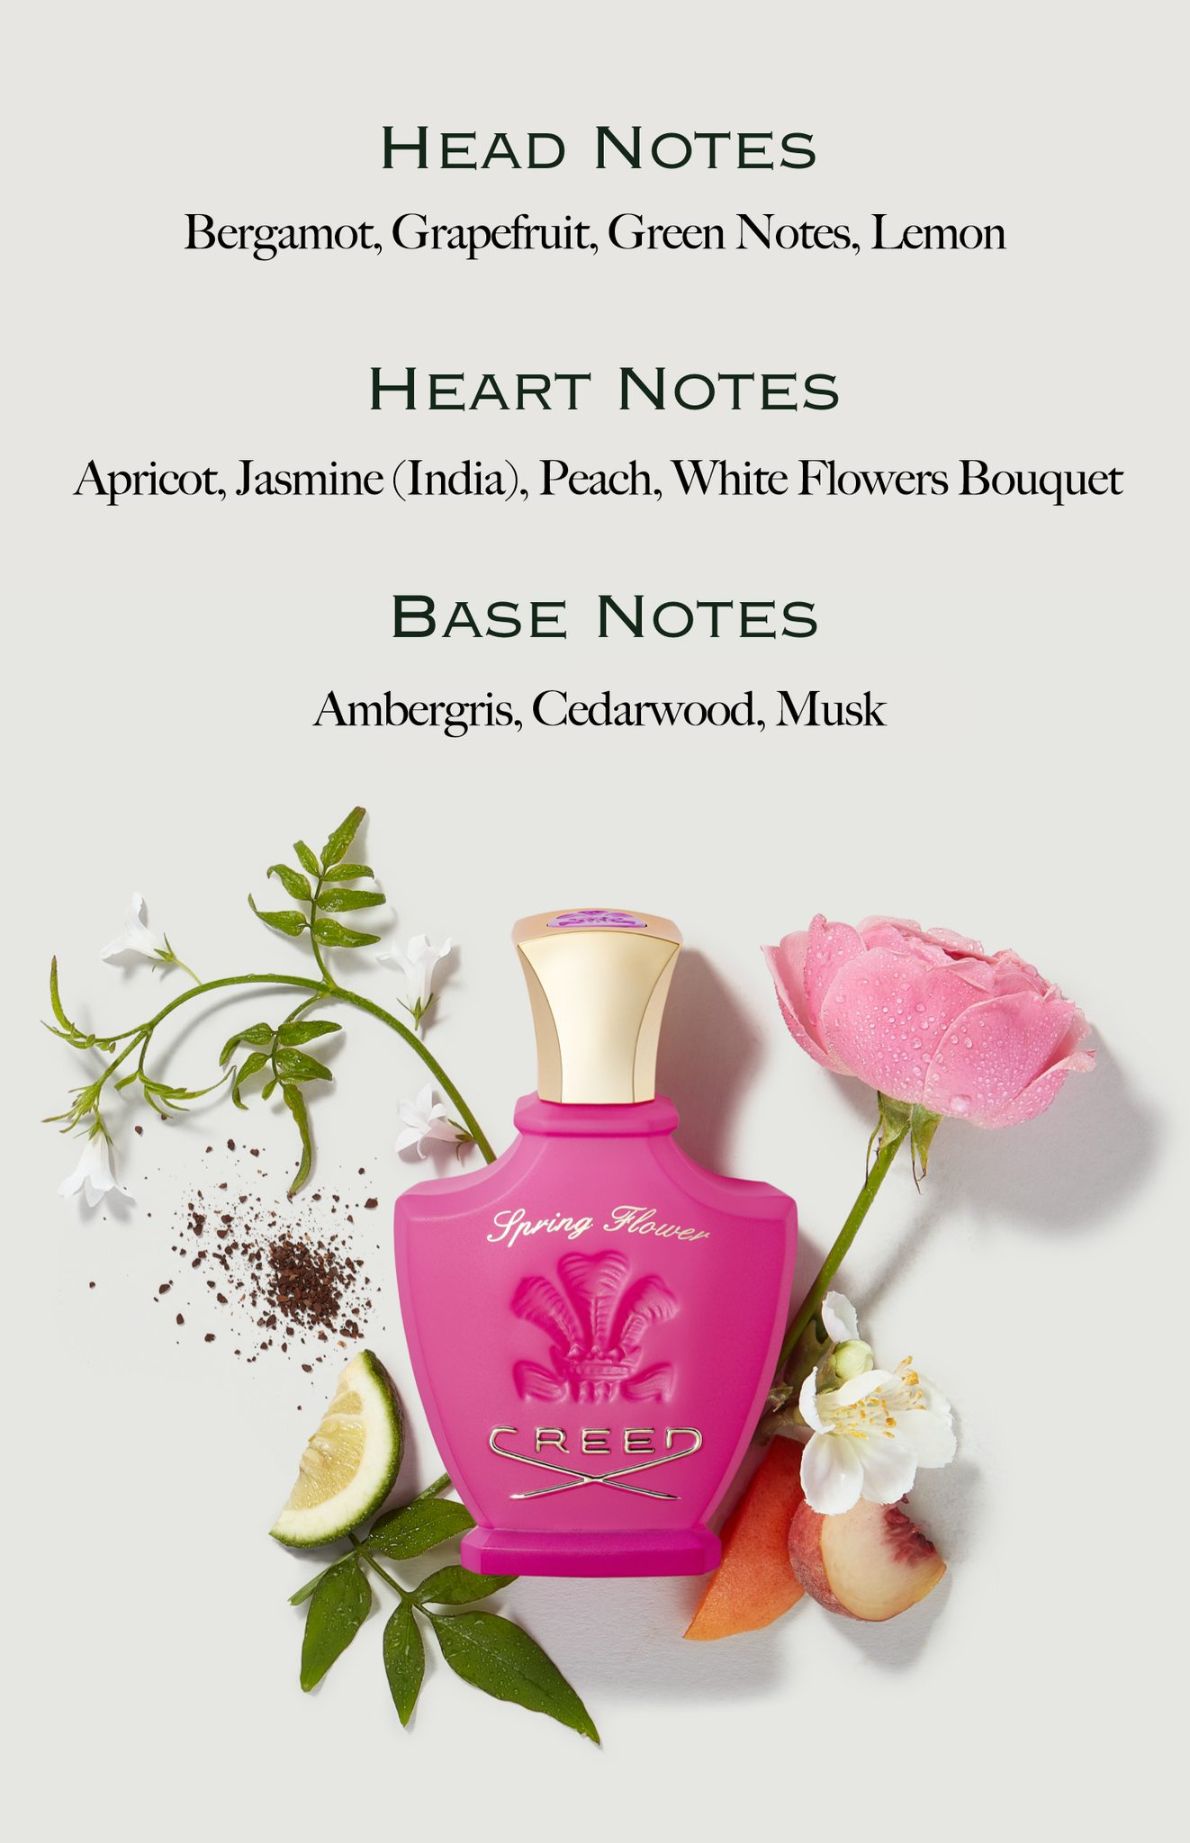 AH Perfumes 4 Creed Spring Flower   Giọt xuân long lanh căng tràn nhựa sống